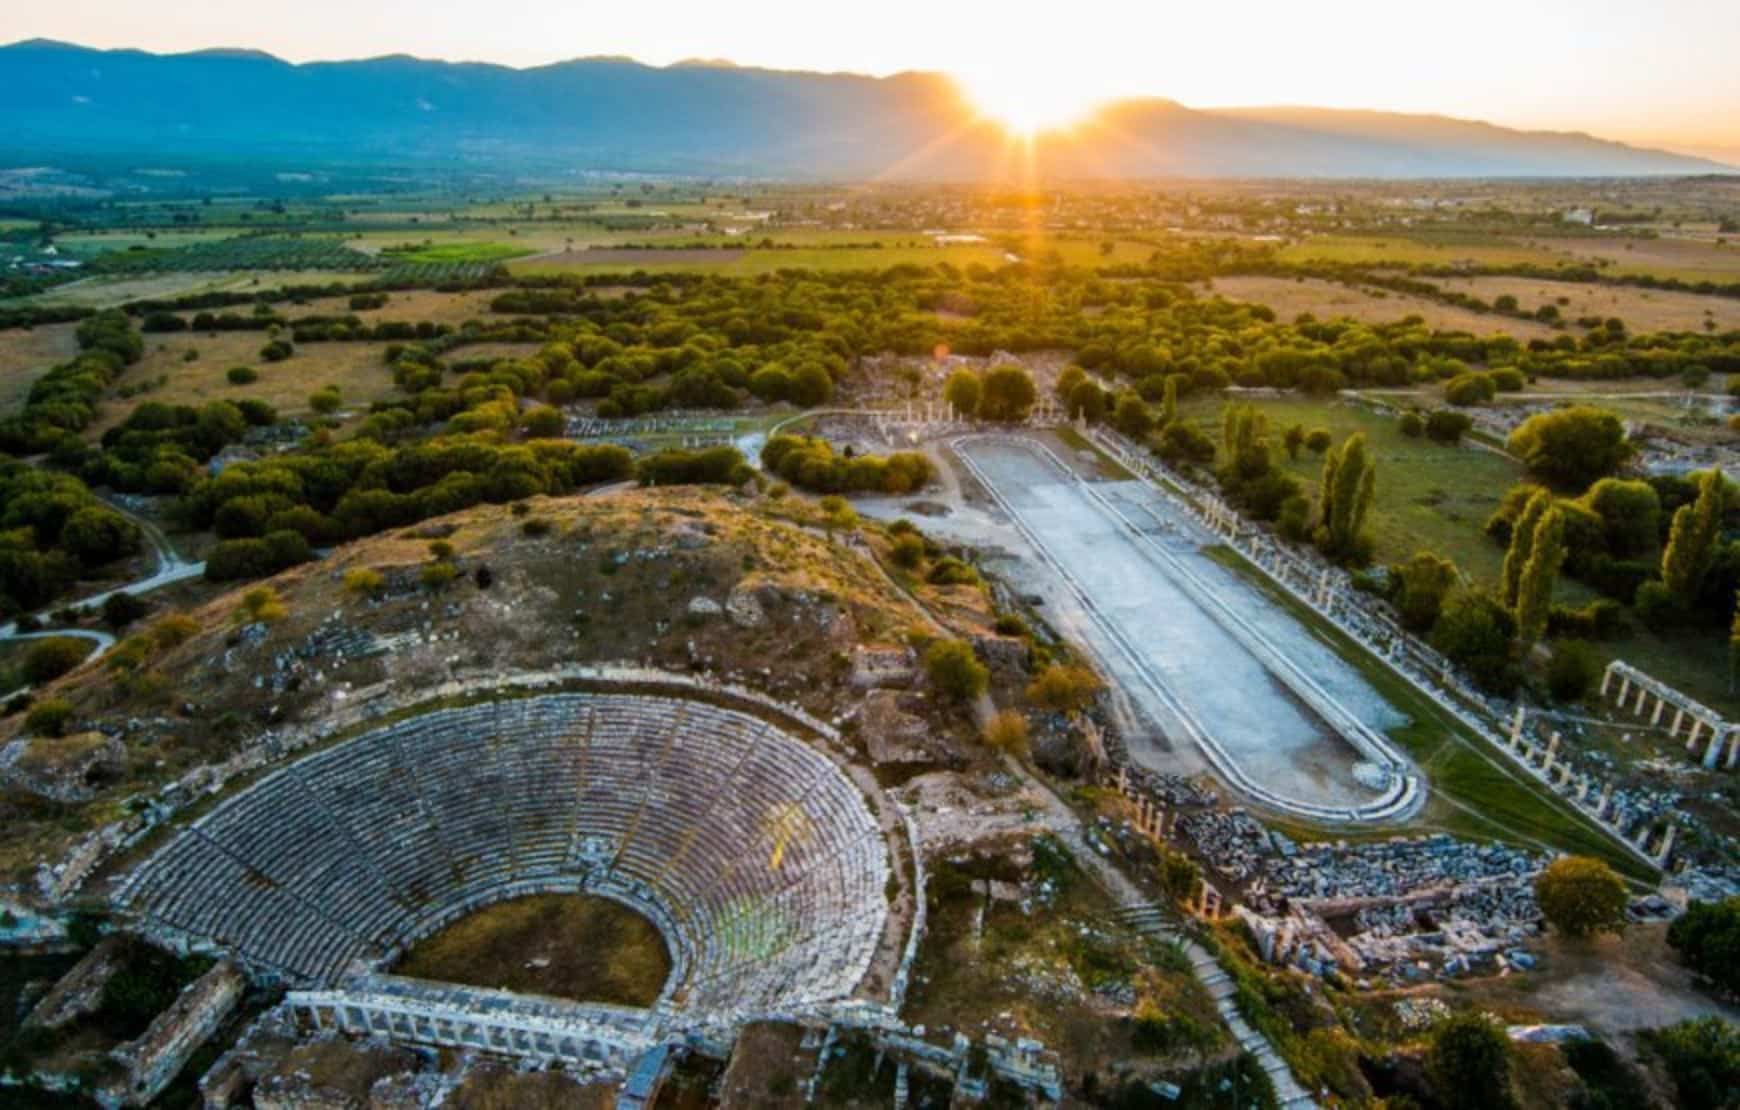 Pamukkale and Aphrodisias Private Tour from Kusadasi - Aerial View of Aphrodisias Ancient City